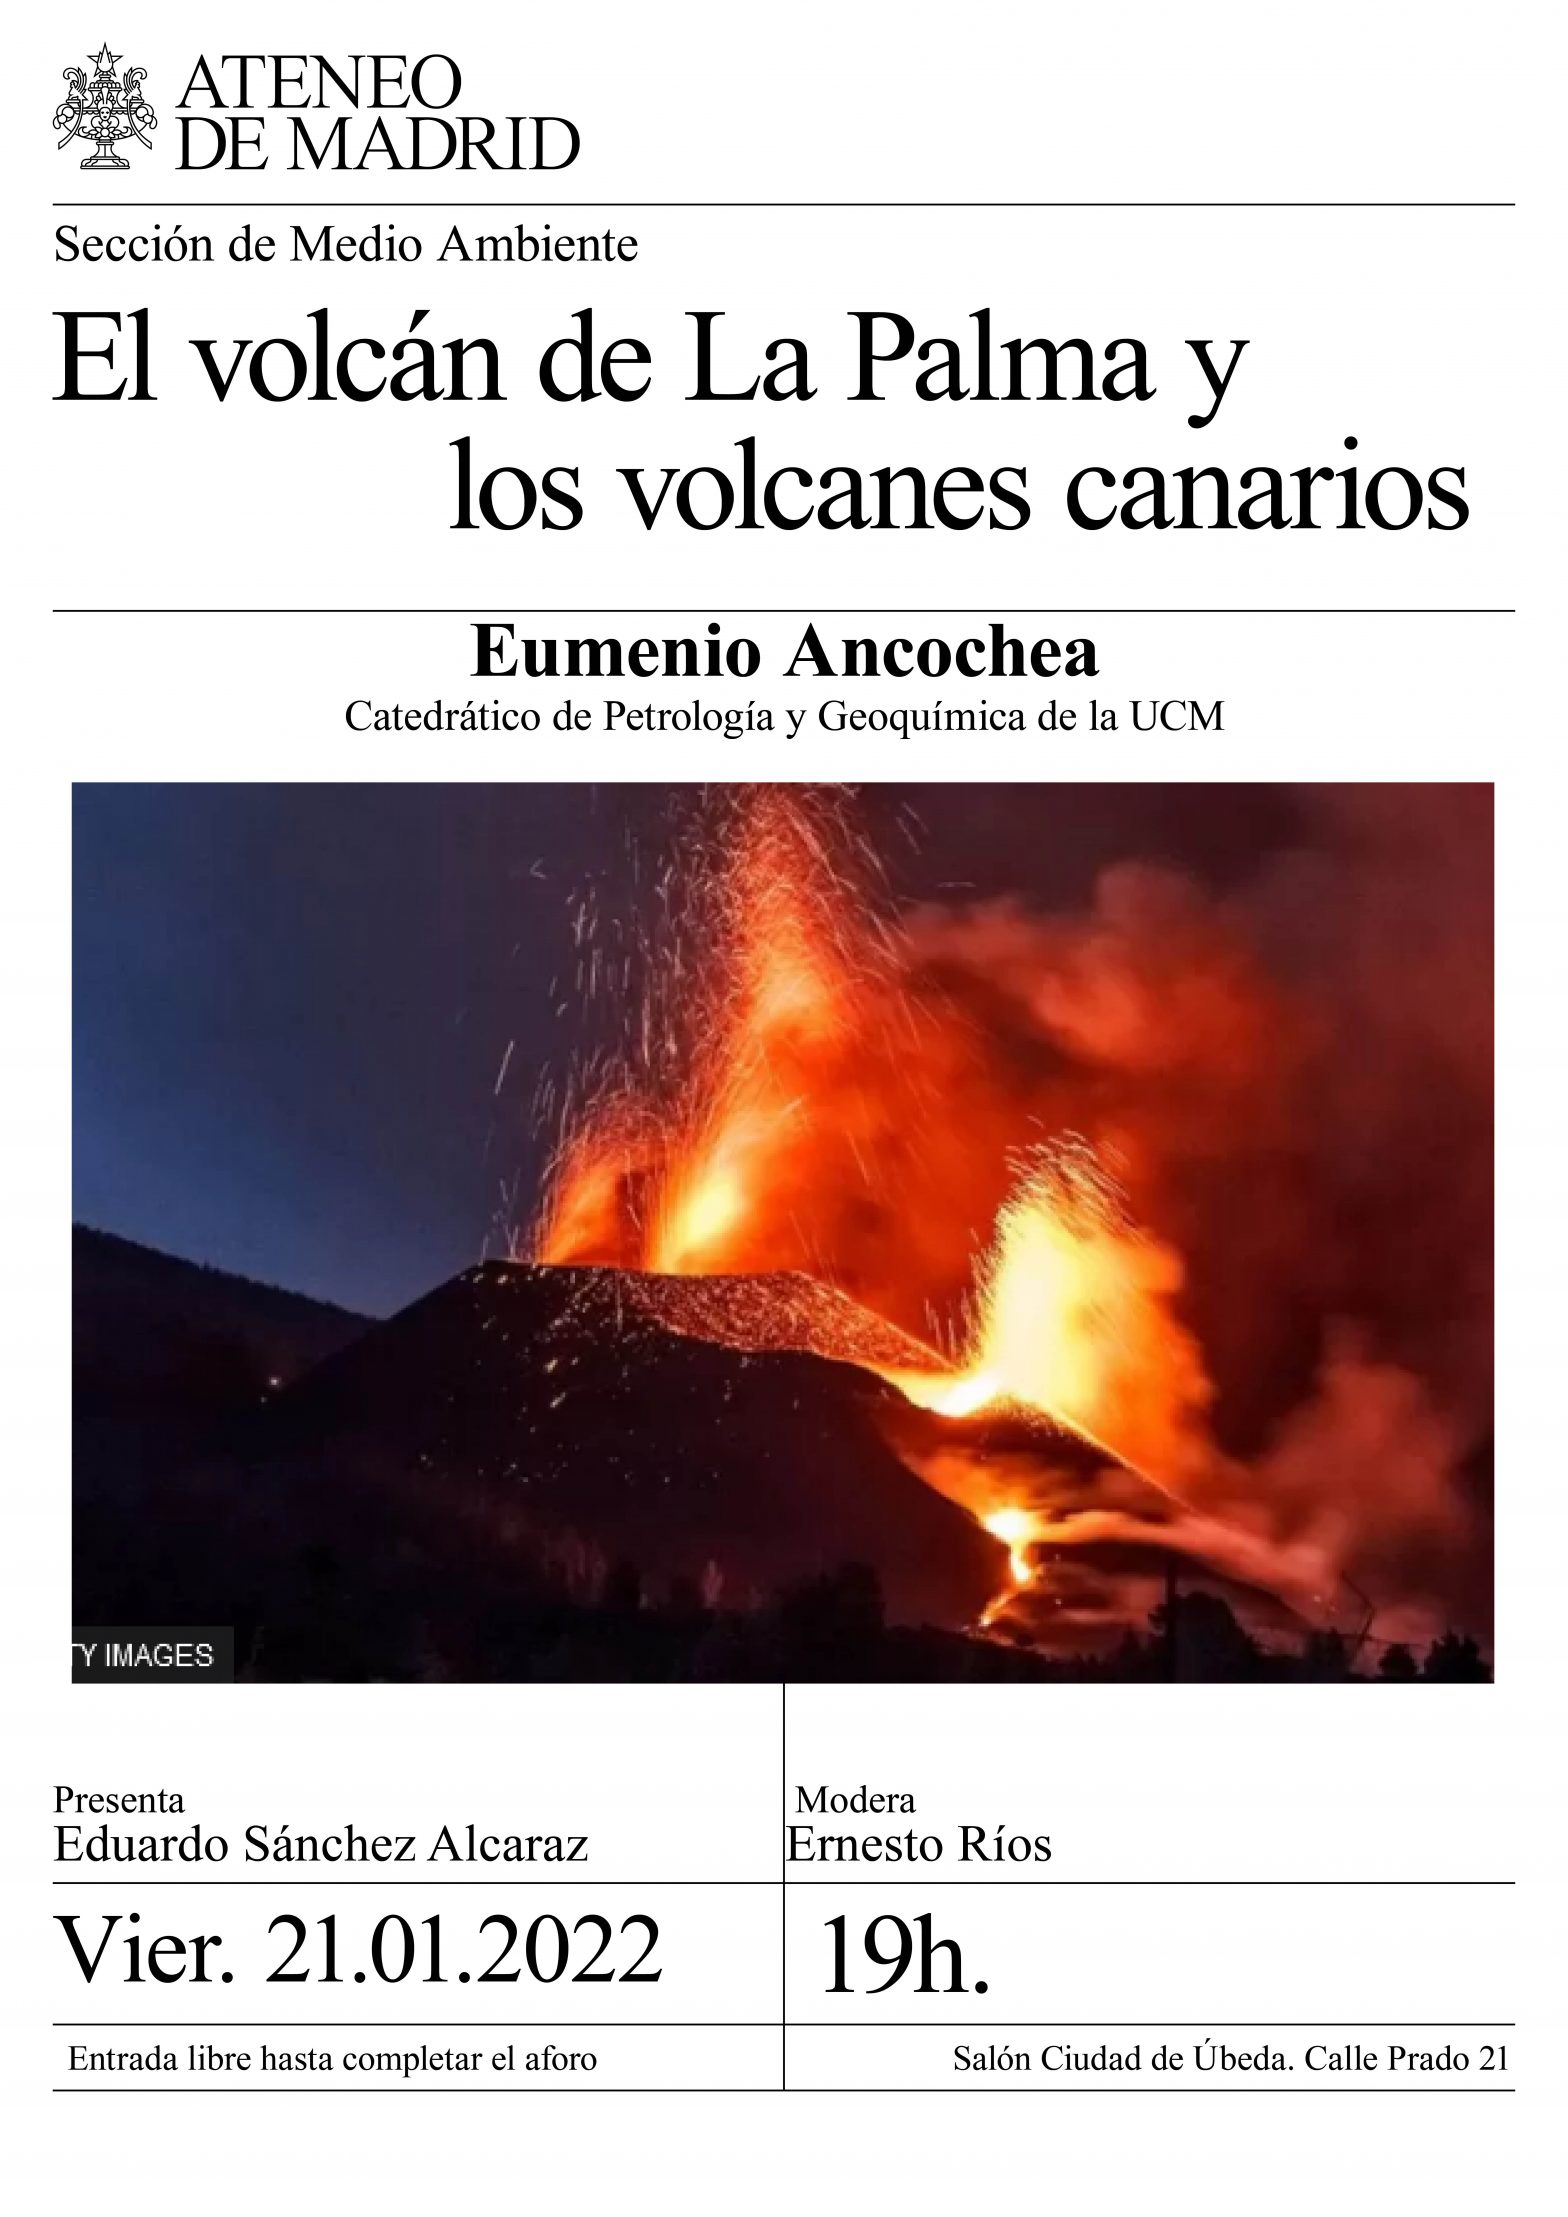 El volcán de La Palma y los volcanes canarios.